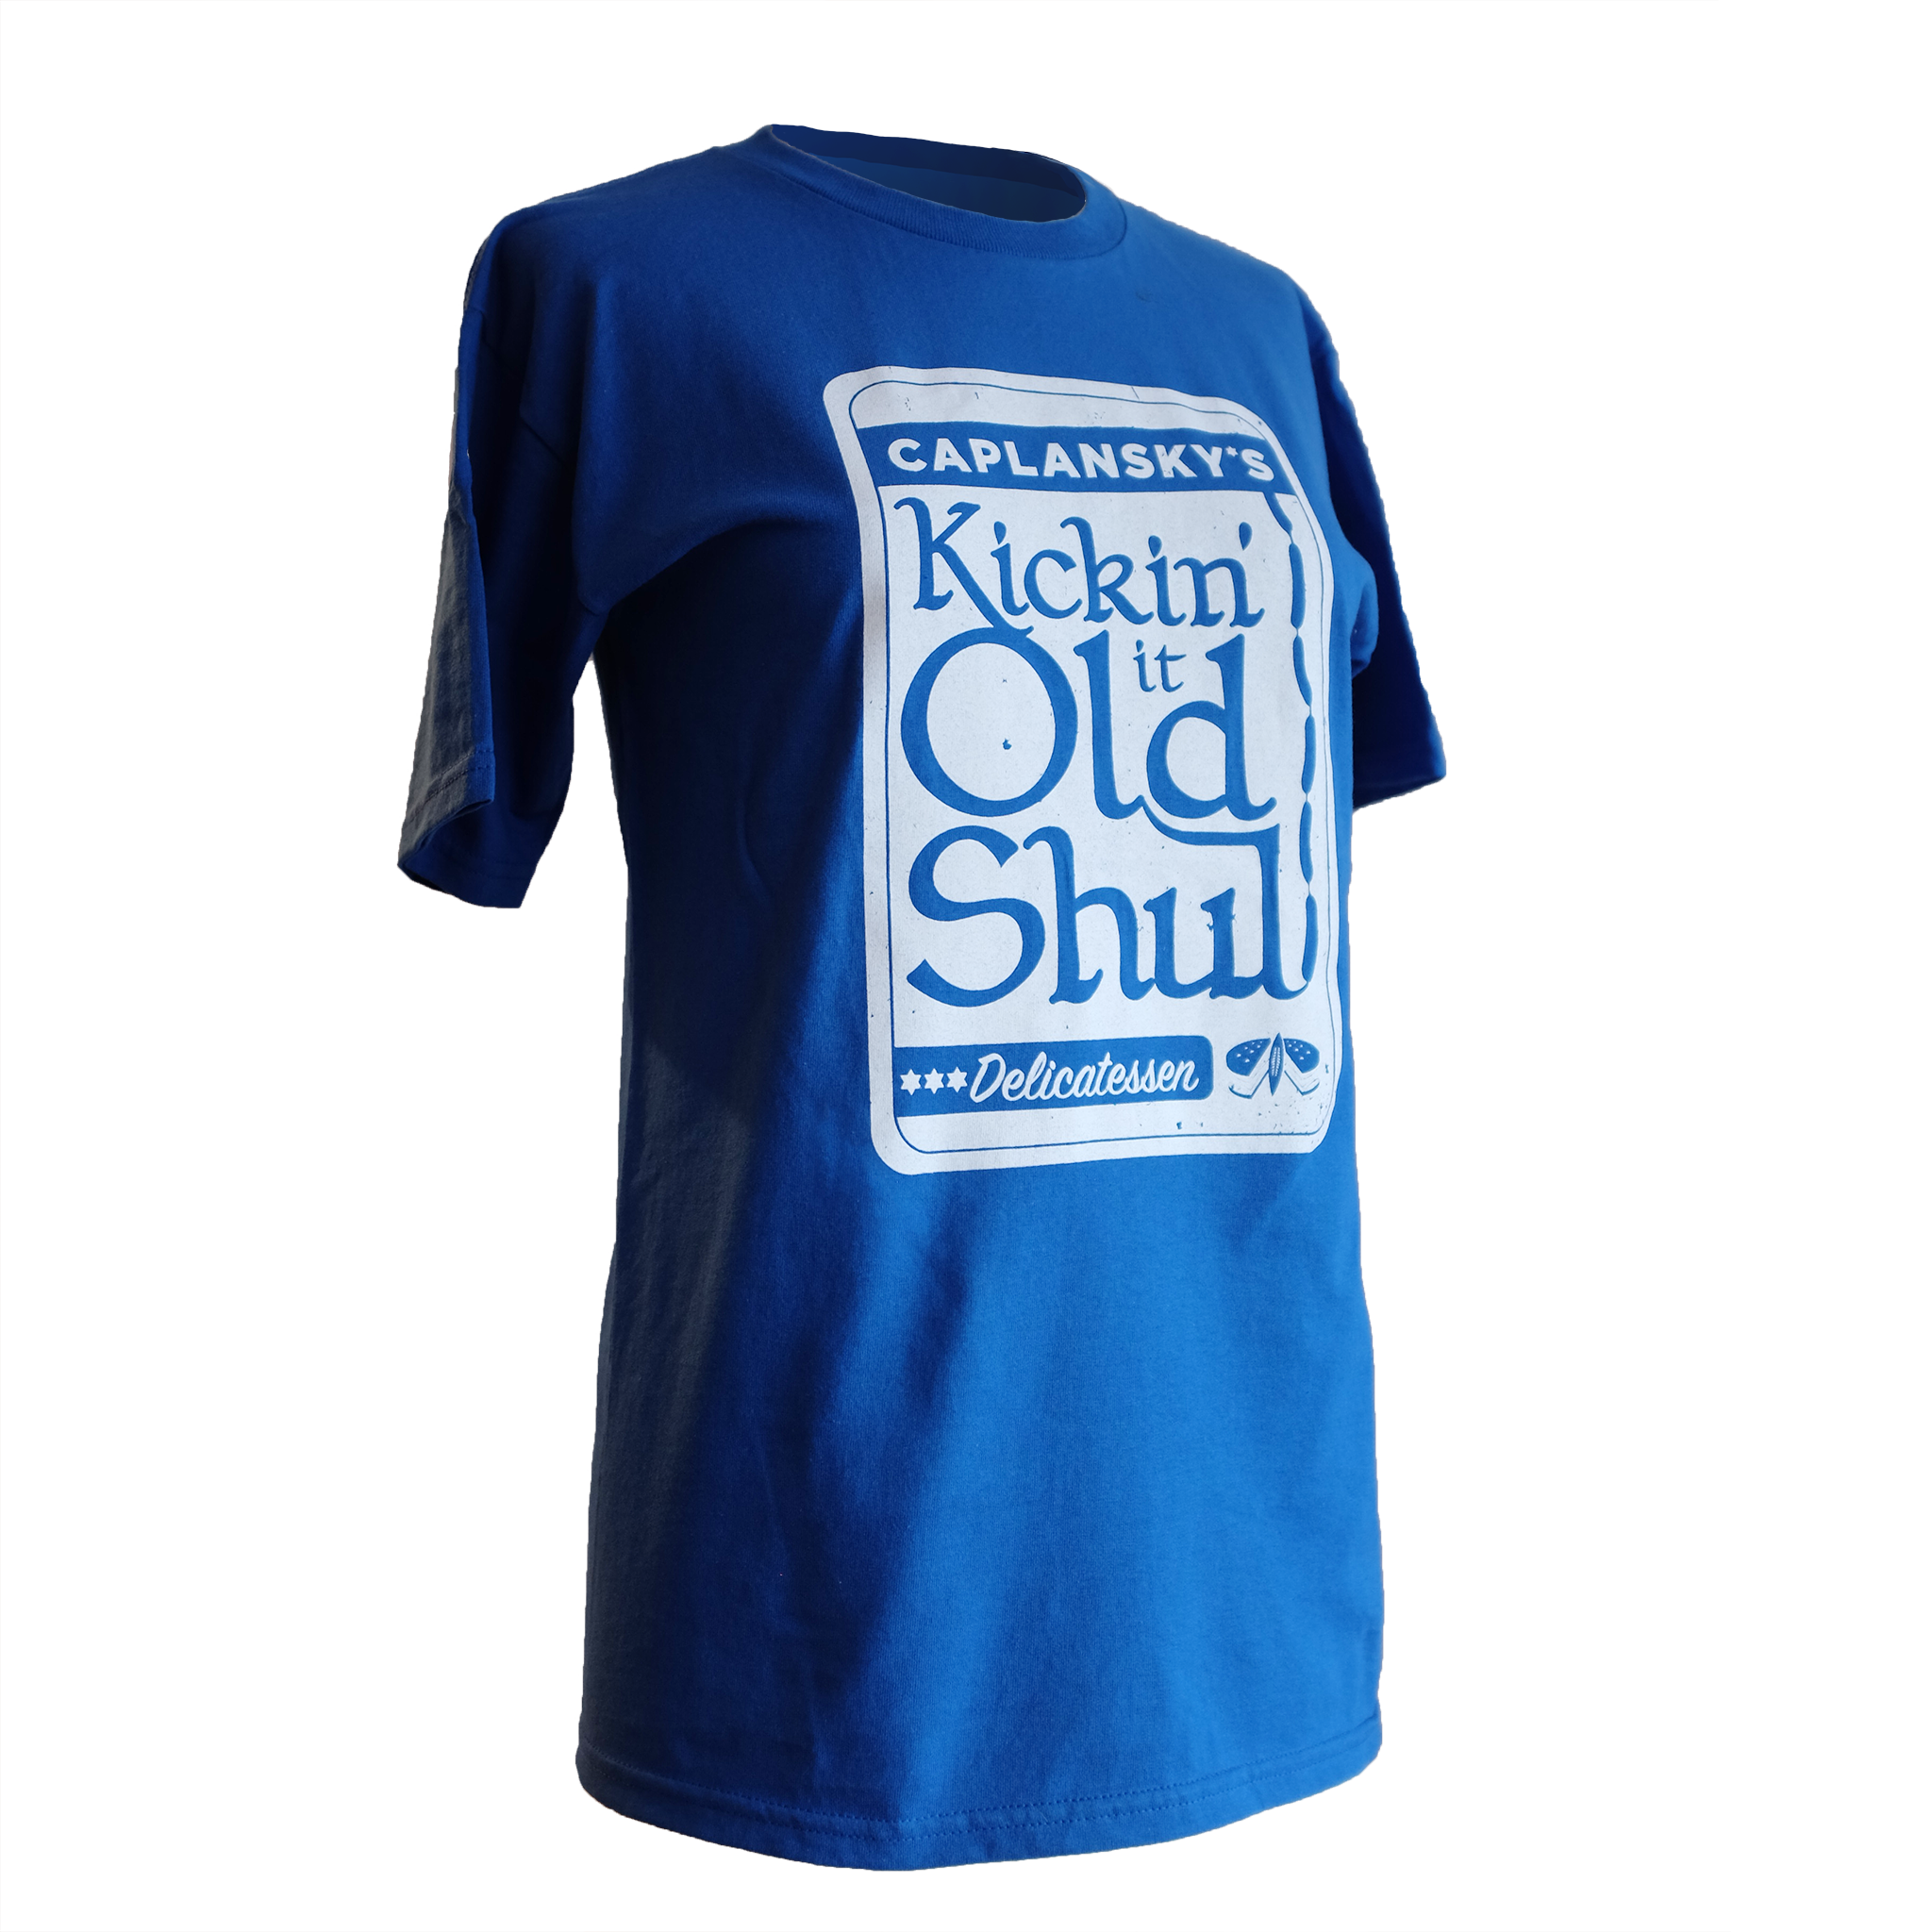 Kickin' it Old Shul T-shirt